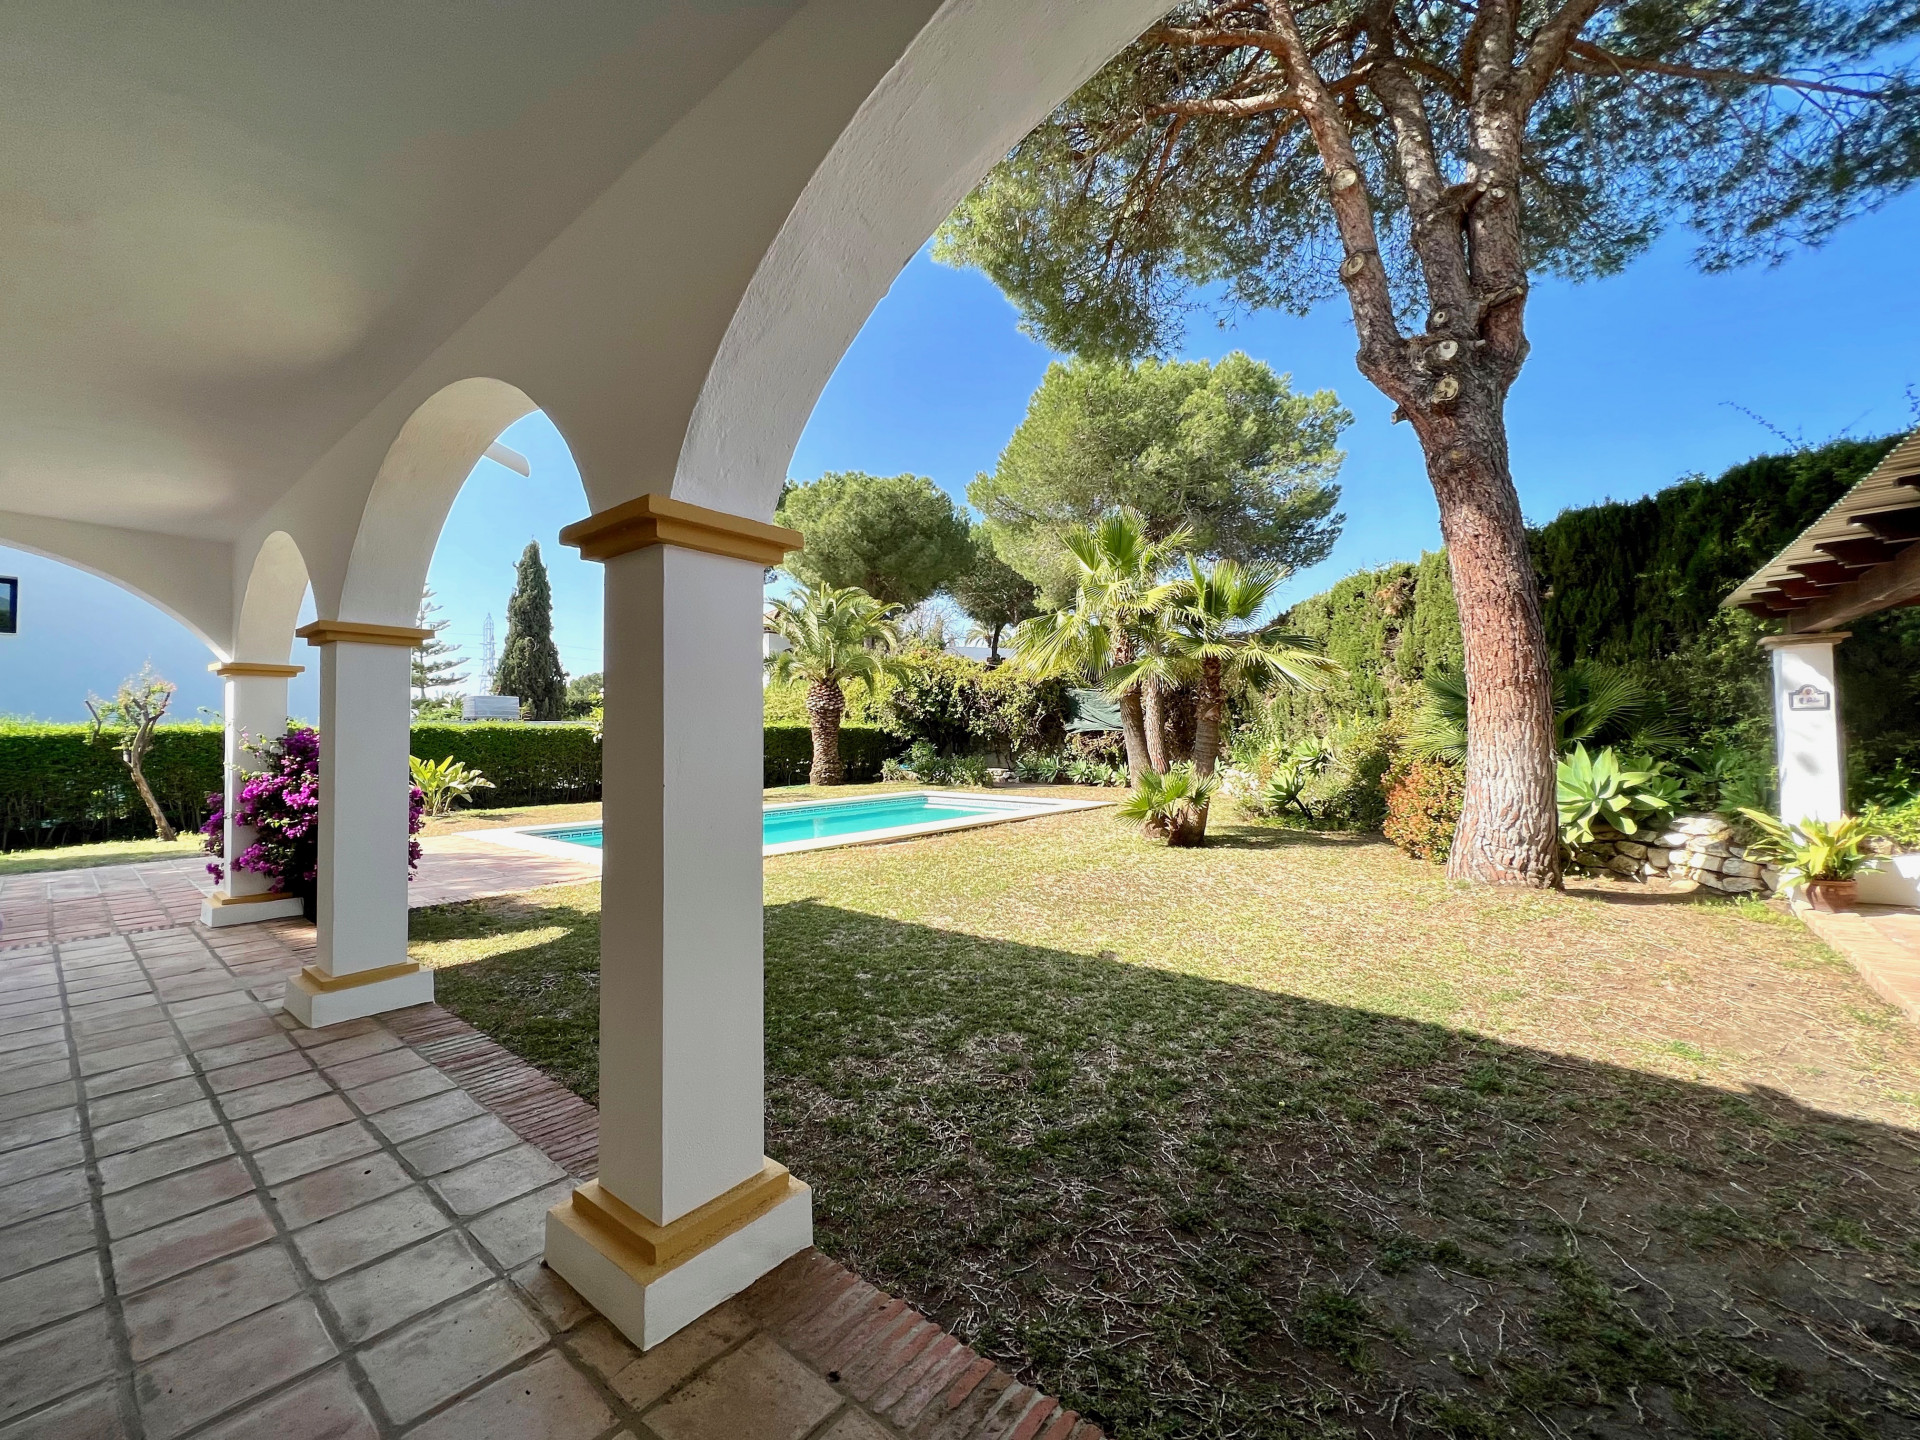 Beautiful Mediterranean, rustic style, villa with a beautiful inner patio in El Paraíso